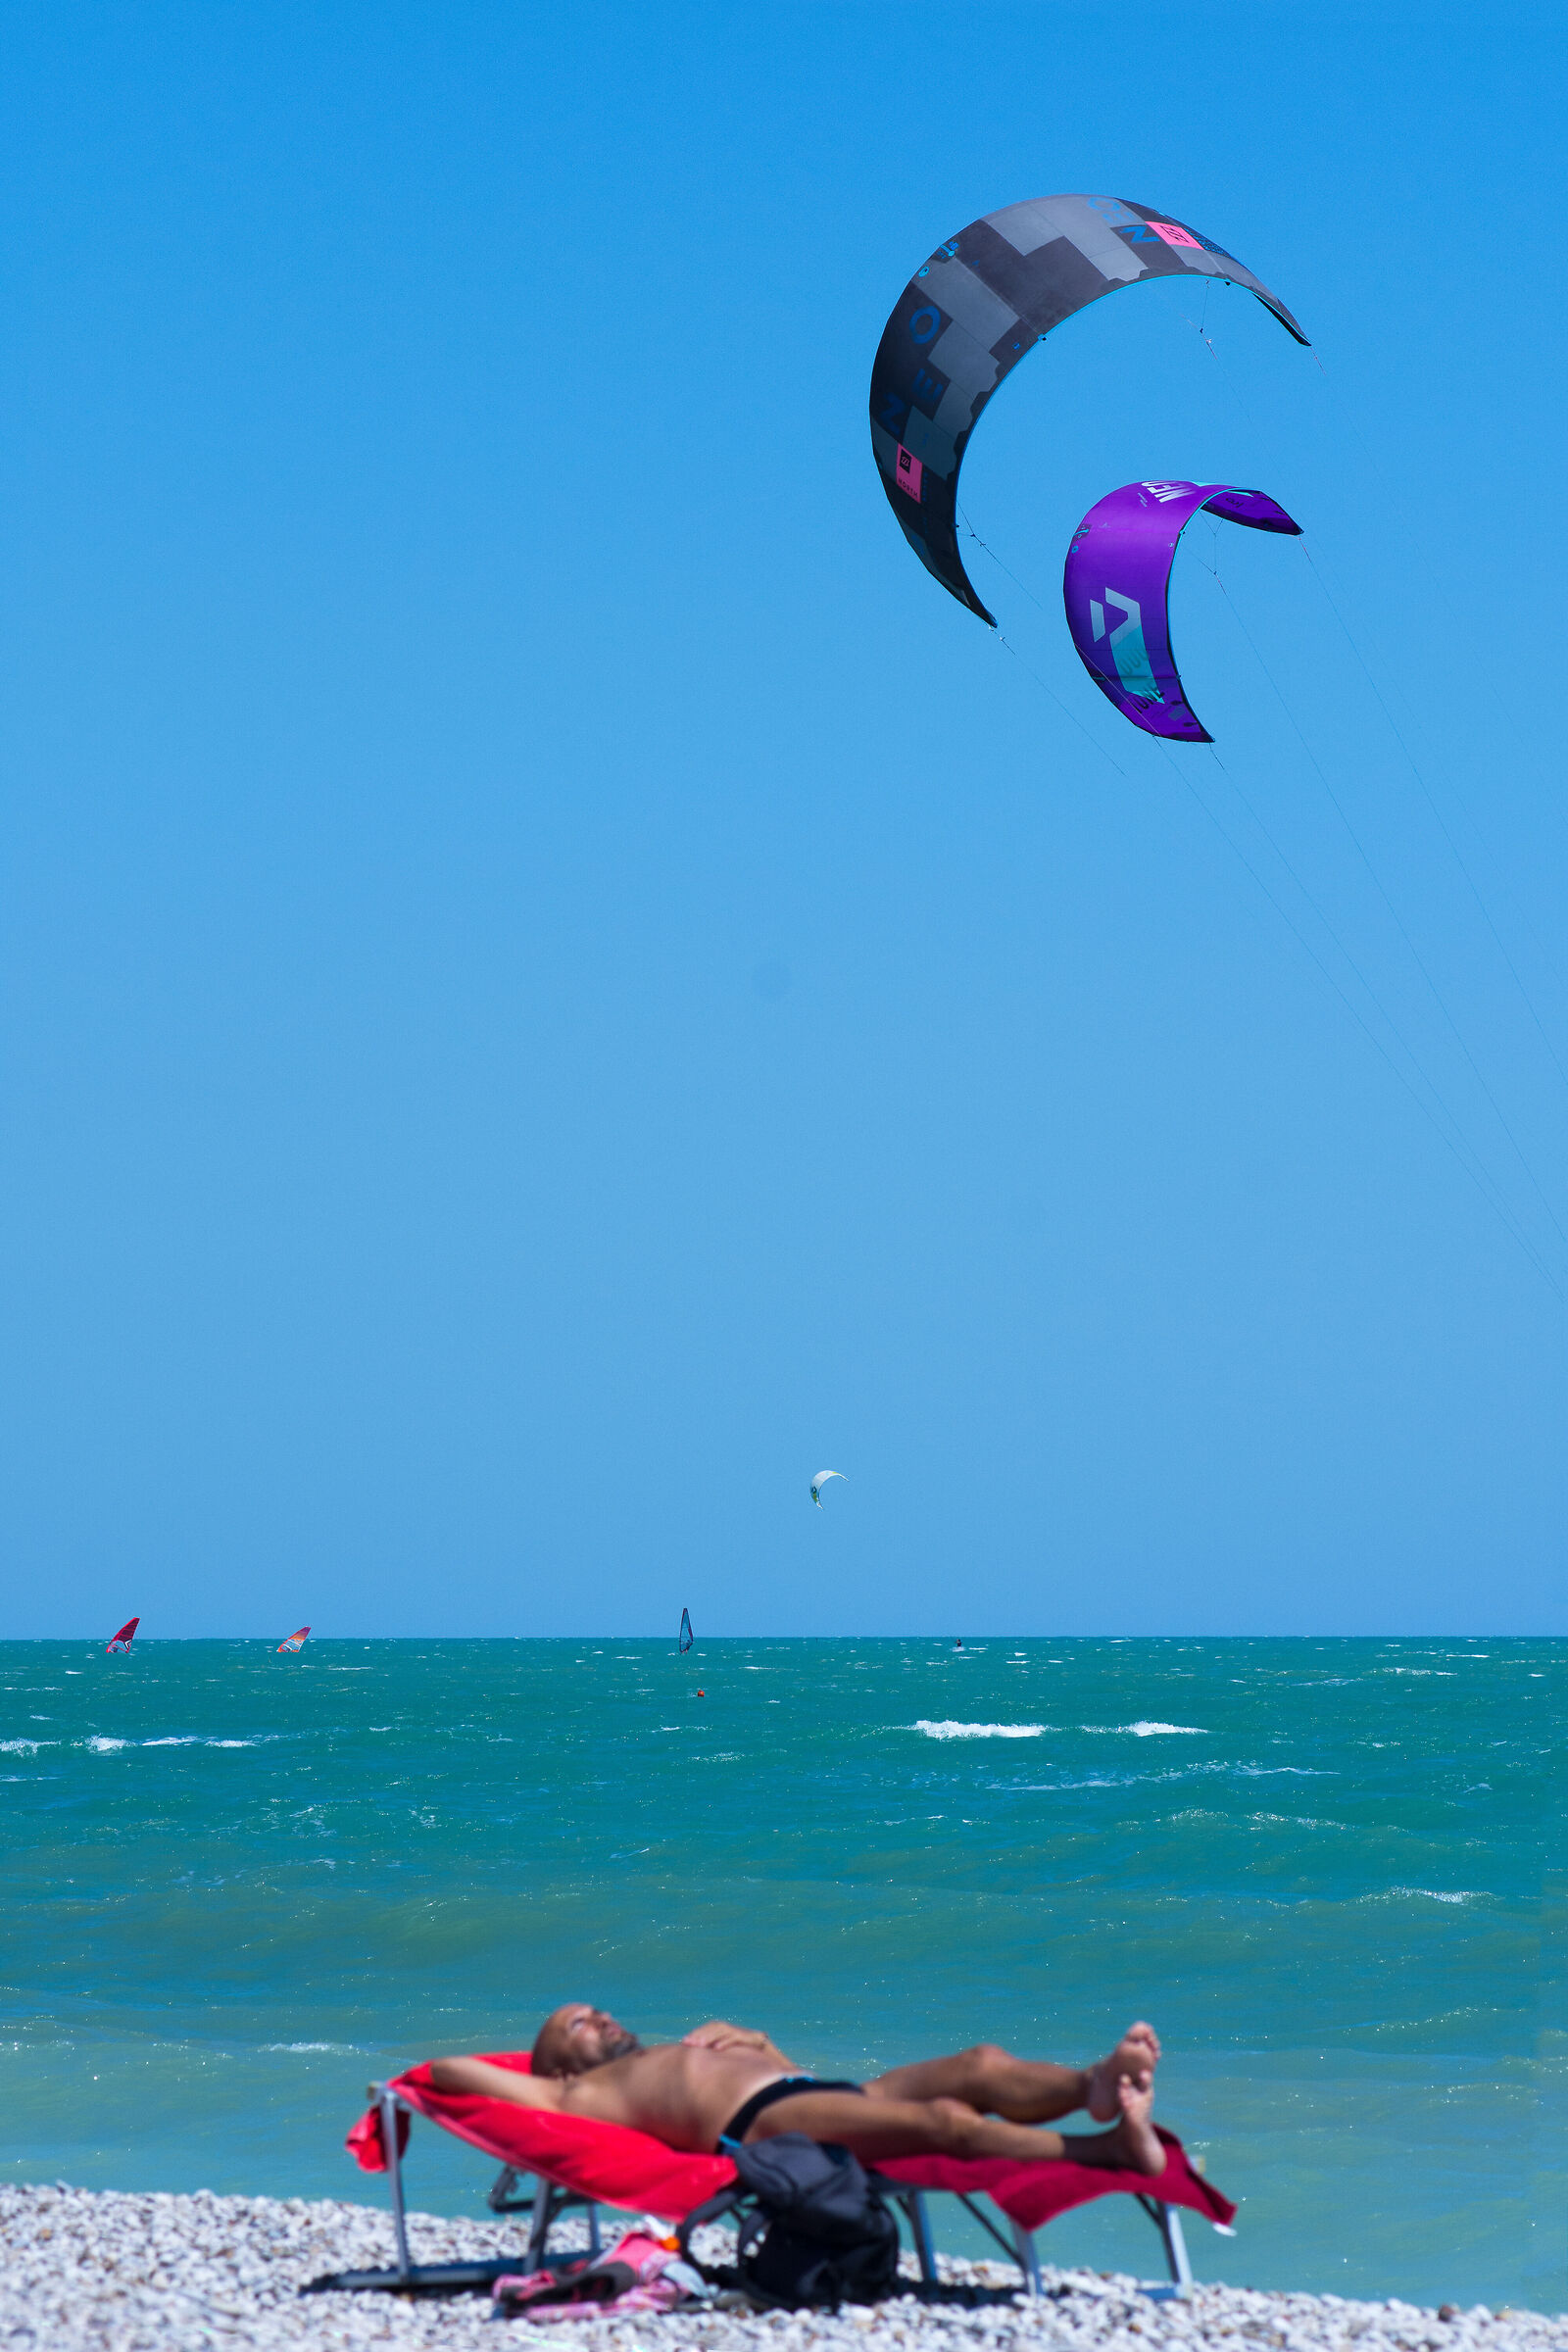 Dreaming of kitesurfing...